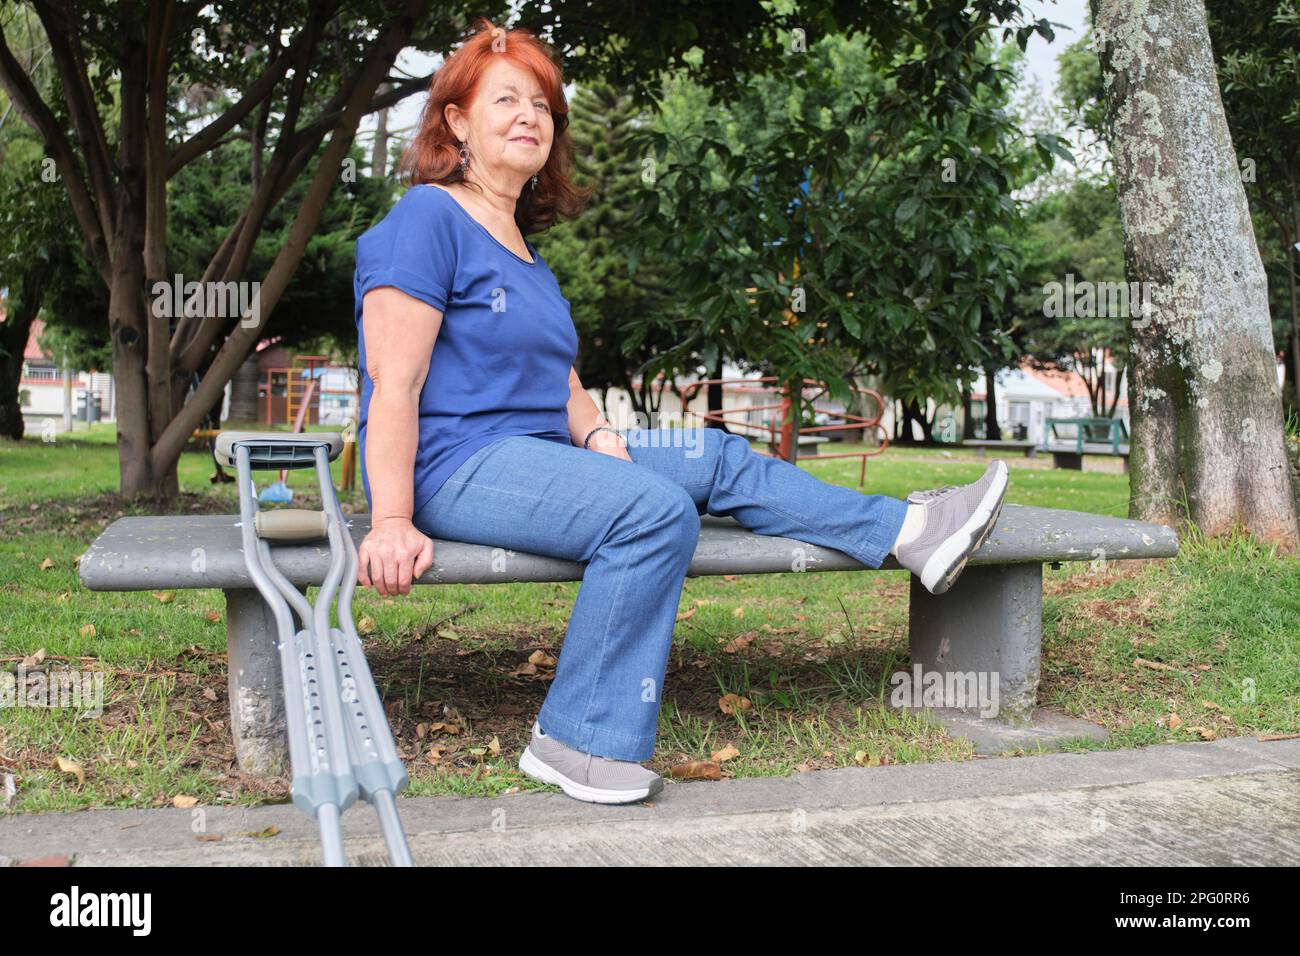 Donna matura ispanica con una ferita del piede si siede su una panca del parco con un paio di stampelle propped in su vicino a lei. Concetti: Atteggiamento positivo verso l'adve Foto Stock